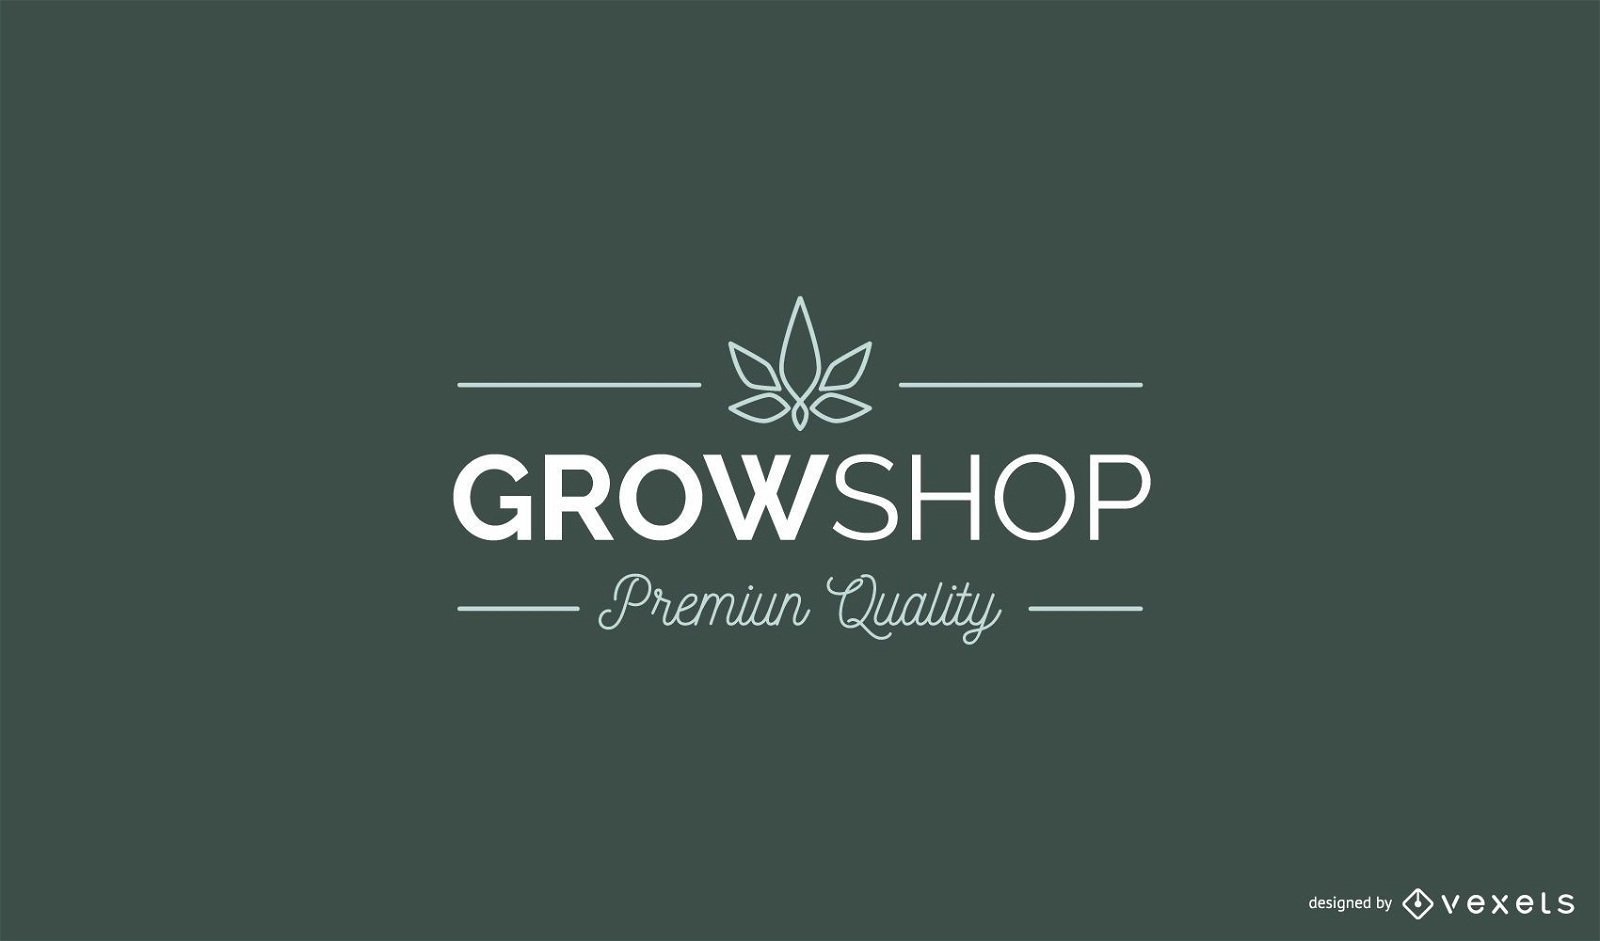 Grow Shop Custom Logo Design